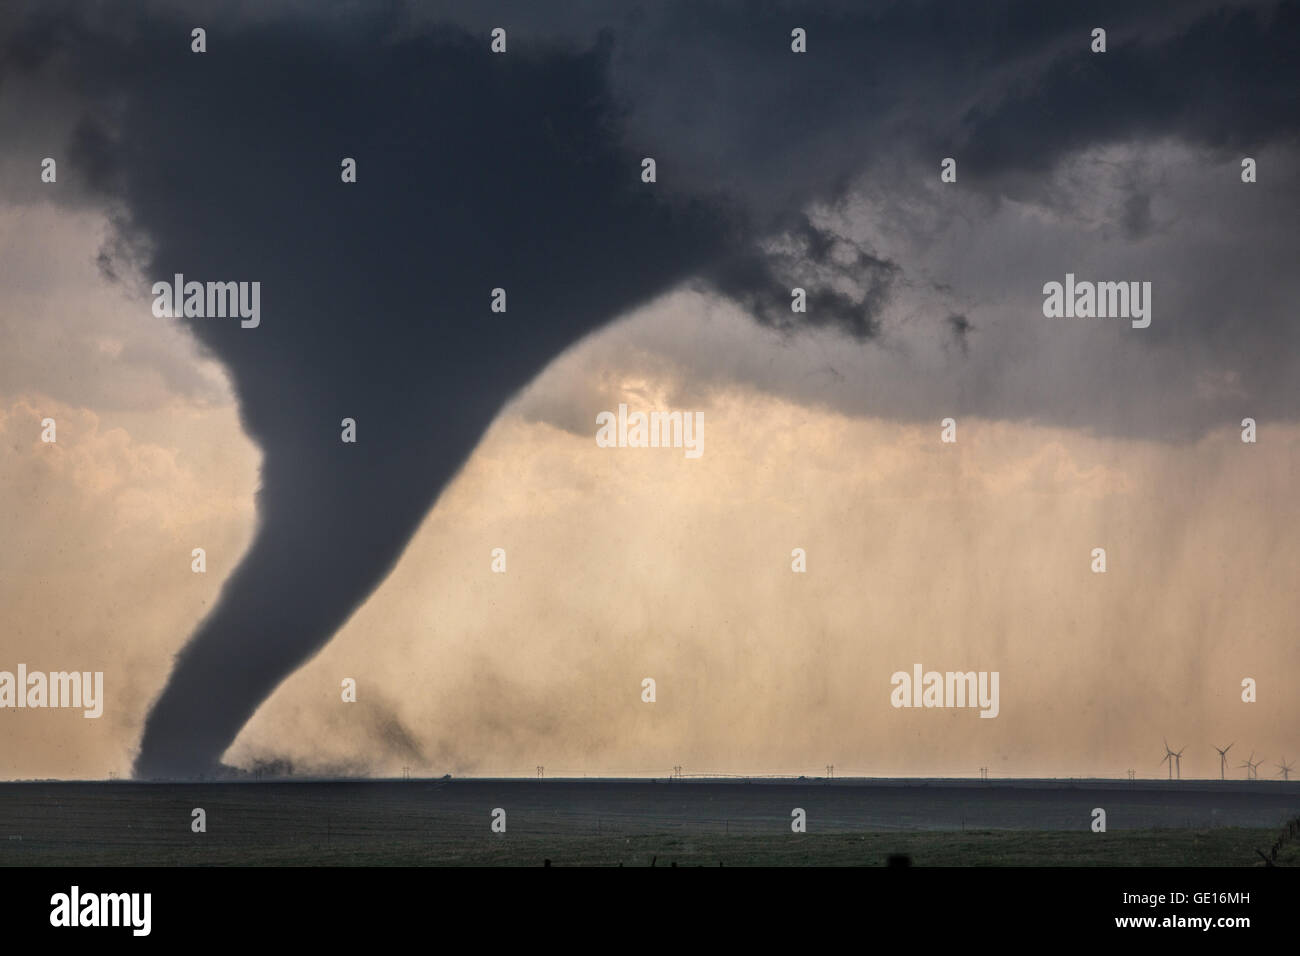 Ein Tornado stammt aus einer superzelle in der Nähe von Dodge City, Kansas, 24. Mai 2016. Wind Generatoren sind im Hintergrund. Stockfoto